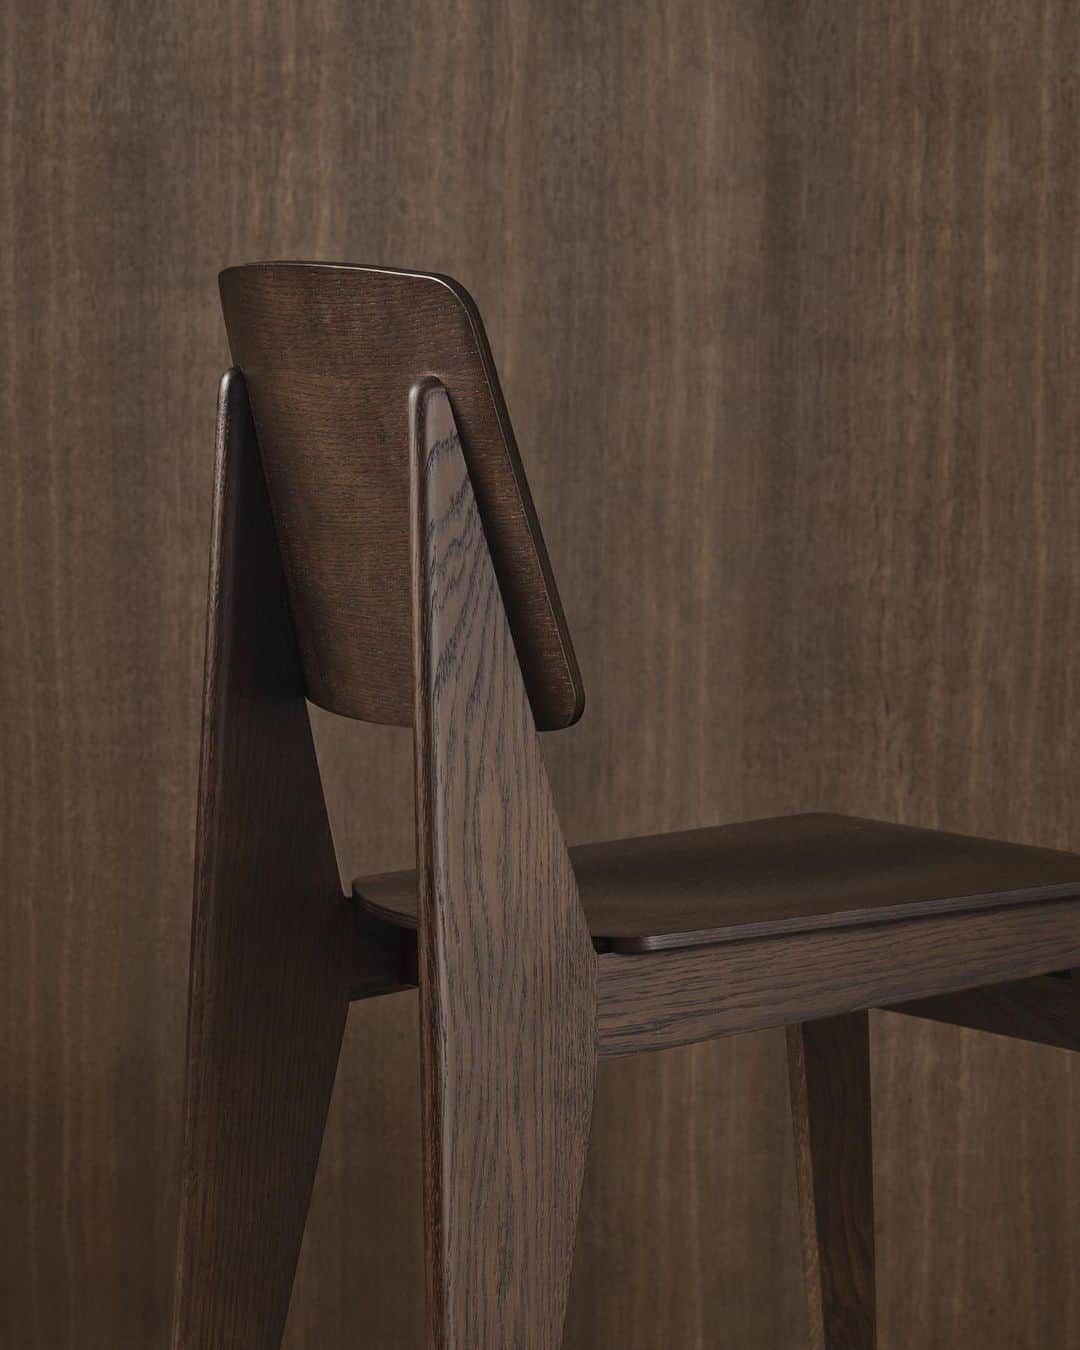 Vitra Japanさんのインスタグラム写真 - (Vitra JapanInstagram)「ジャン・プルーヴェのドローイングポスター（非売品）プレゼント！﻿ ﻿ ジャン・プルーヴェがデザインした唯一の全木製の椅子「シェーズ トゥ ボワ」。ヴィトラより初めて復刻を果たすこのモデルは、第二次世界大戦中の金属不足より生み出された、ネジを使わない1941 年の仕様に忠実に再現され、大きさや座面の高さは現代の暮らしに合わせて調節されています。サスティナブルな素材である木材を用い、困難な状況を創意工夫で乗り越えた革新性と創造性という点において、現代に蘇るに相応しい一脚です。硬さと強度が十分なオーク材が使われ、ナチュラルオークとダークオークの2色で展開します。﻿ ﻿ このシェーズトゥボワ復刻を記念して、ご購入いただいた方全員に、ジャン・プルーヴェによるドローイングポスター（写真2枚目）をプレゼントします。#プルーヴェの木製椅子 を付けて、あなたのシェーズトゥボワを是非インスタグラムにてご紹介ください。皆様のご応募をお待ちしています。﻿ ﻿ 応募期間：2021年1月17日(日) 24:00まで﻿ 対象：シェーズトゥボワご購入の方(※日本在住者に限る)﻿ 応募方法：﻿ 1. @vitra_japanをフォロー﻿ 2. #プルーヴェの木製椅子 をつけて、あなたのシェーズトゥボワの写真をインスタグラムにて投稿﻿ プレゼント発送：ダイレクトメールにてご連絡します。﻿ ﻿ #プルーヴェの木製椅子﻿ #Vitra #VitraJapan #JeanProuve #ChaiseToutBois﻿ #ヴィトラ #ヴィトラジャパン #ジャンプルーヴェ #プルーヴェ #シェーズトゥボワ #チェア #ミッドセンチュリー #インテリア #季節を楽しむ #暮らしを楽しむ #プレゼント」11月2日 21時07分 - vitra_japan